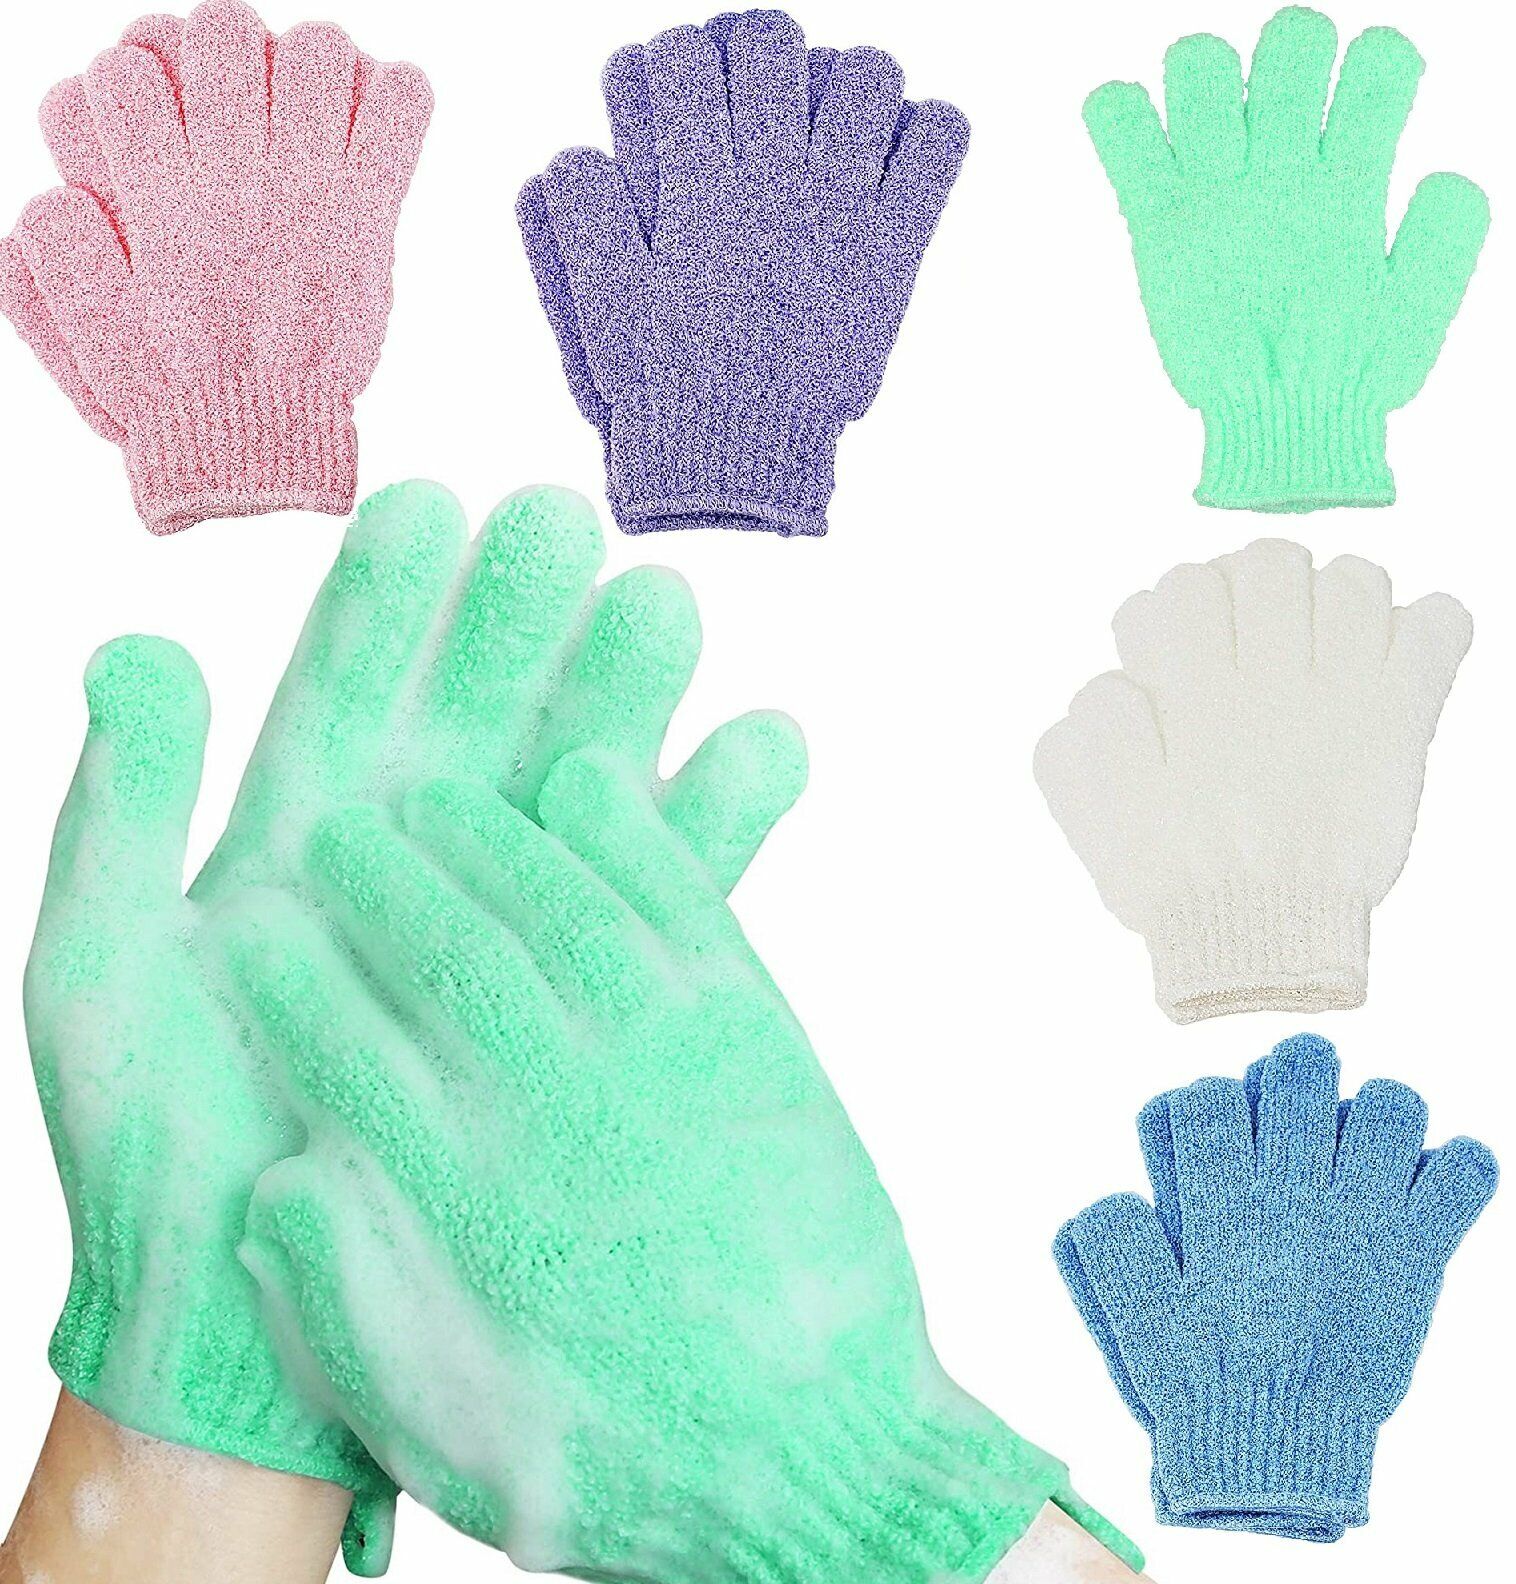 Exfoliating Spa Bath Gloves Shower Soap Clean Hygiene Body Scrub Loofah Massage